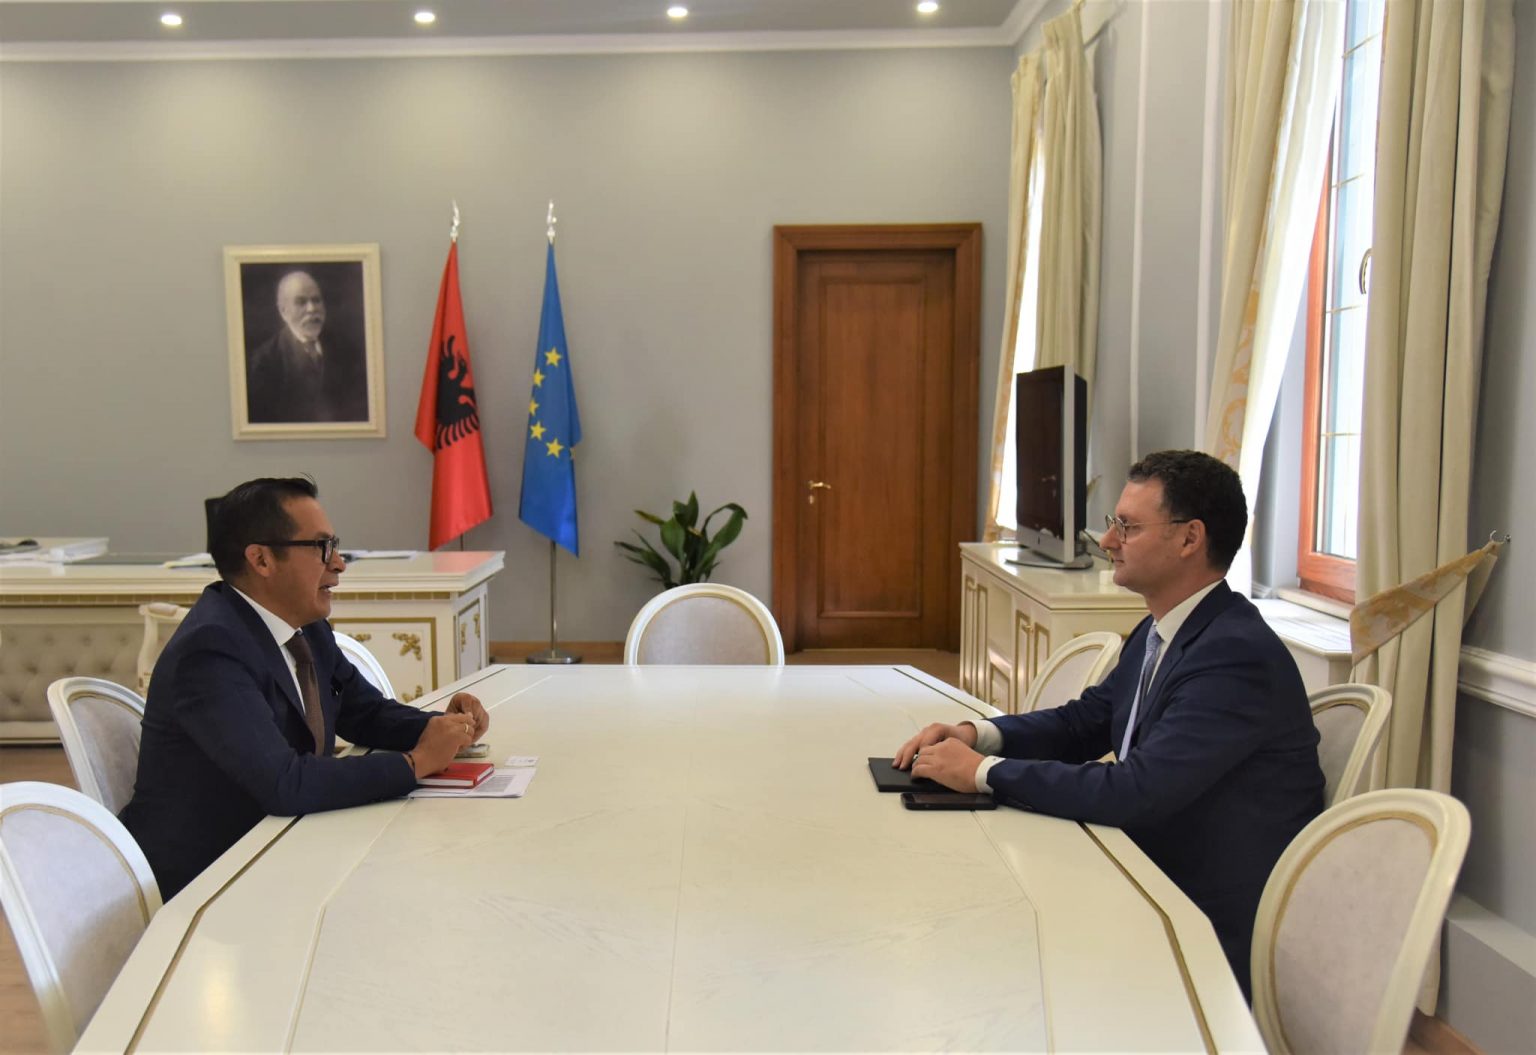 NGA PROCESI I BERLINIT, TEK INTEGRIMI NË BE/ Ministri Mete takohet me Menaxherin e BB për Shqipërinë